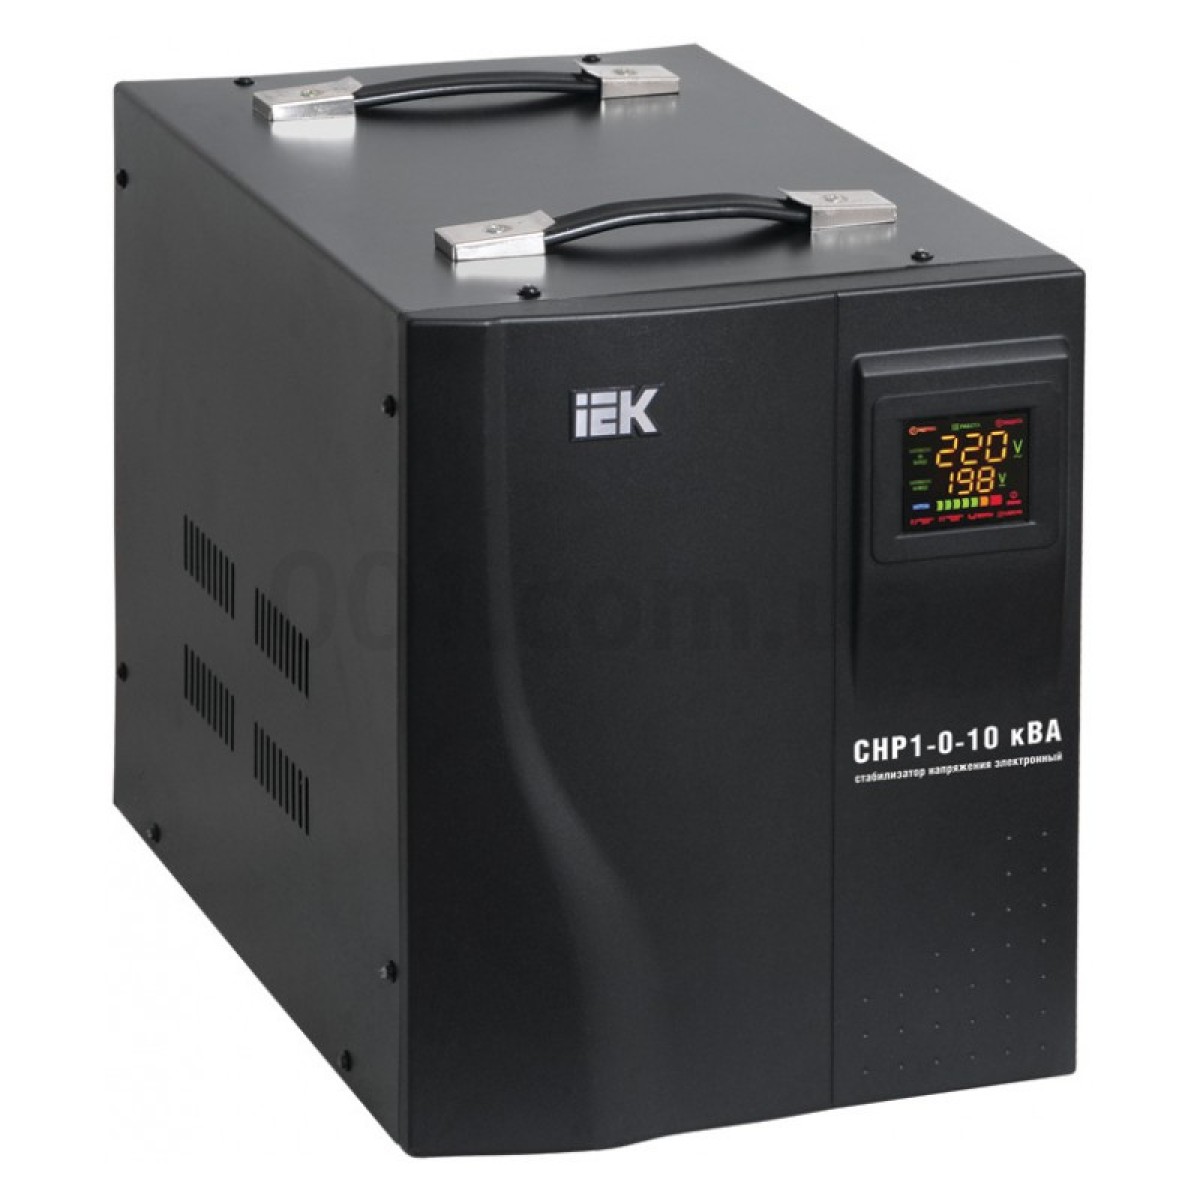 Стабилизатор напряжения СНР1-0-10 кВА электронный переносной, IEK 256_256.jpg